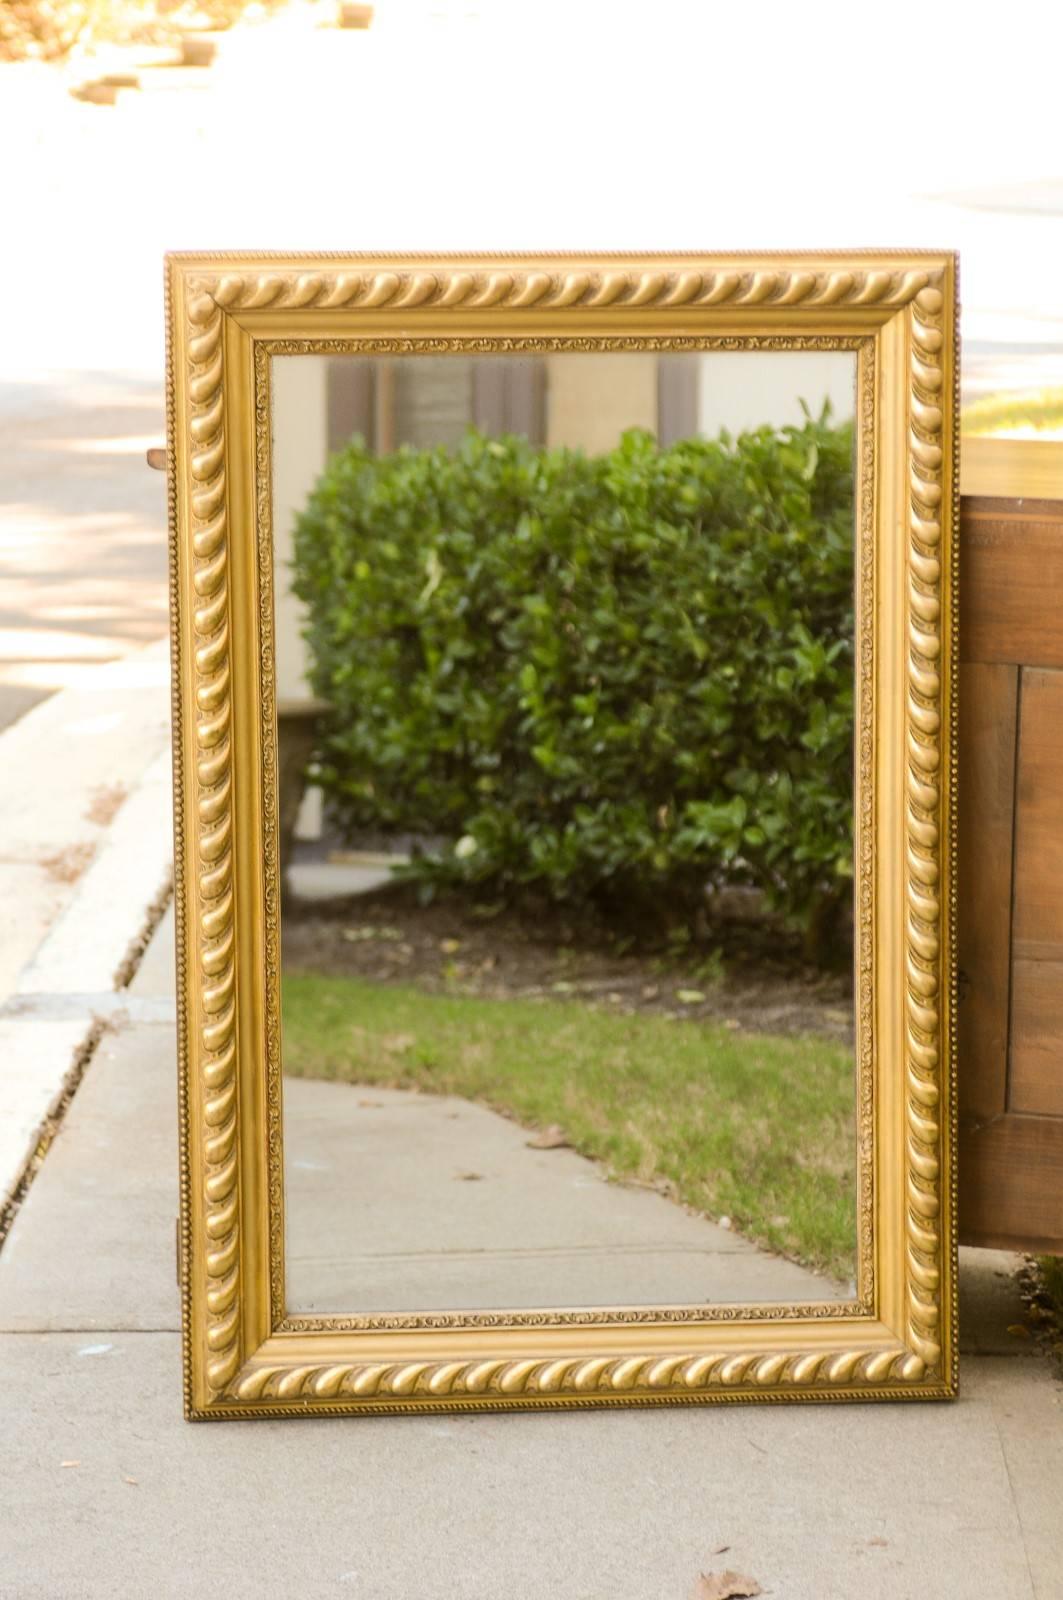 Miroir rectangulaire en bois doré français avec godrons du début du 20e siècle. Ce miroir français présente un cadre rectangulaire, orné d'une belle variété de moulures, des petites perles aux cordes et aux grands godrons. Le cadre intérieur, qui